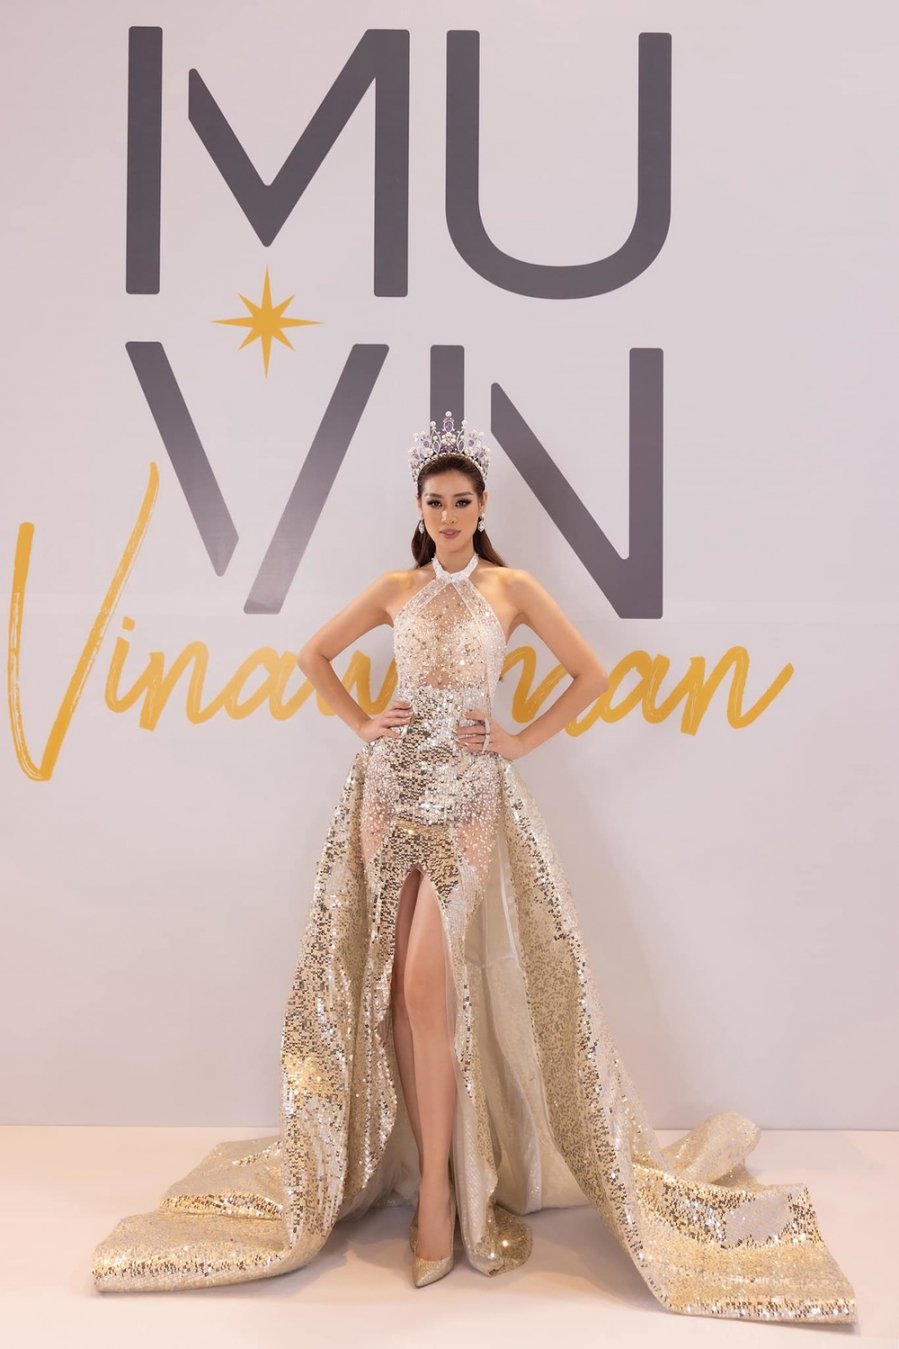 Ngẩn ngơ ngắm trang phục dạ hội lấy ý tưởng độc đáo của Thùy Tiên tại chung  kết Miss International 2018 – Topsao